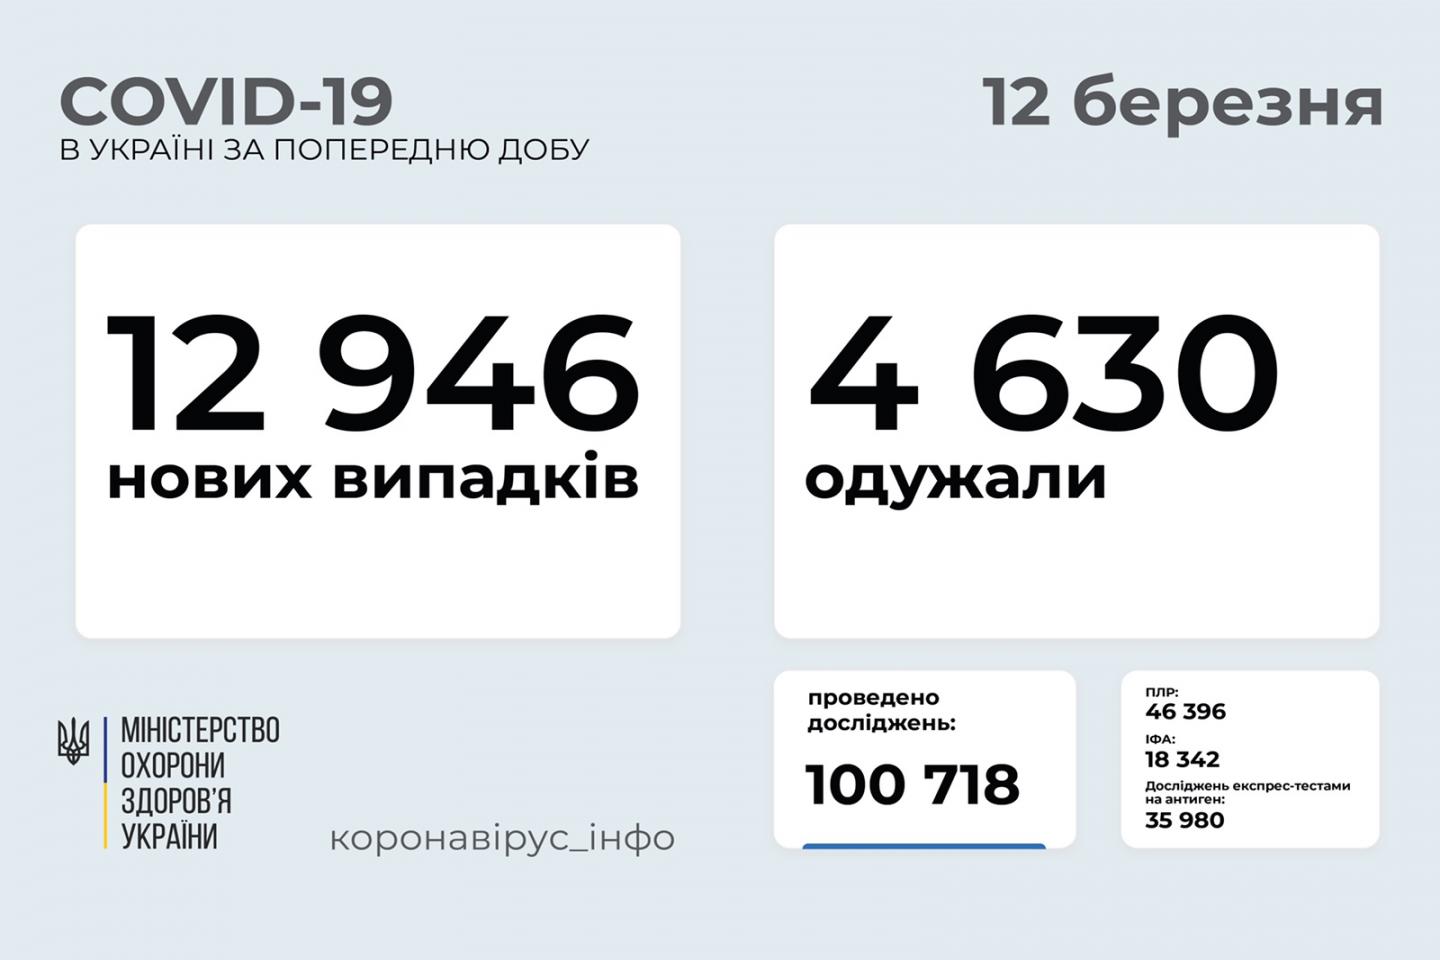 http://dunrada.gov.ua/uploadfile/archive_news/2021/03/12/2021-03-12_7437/images/images-35463.jpg